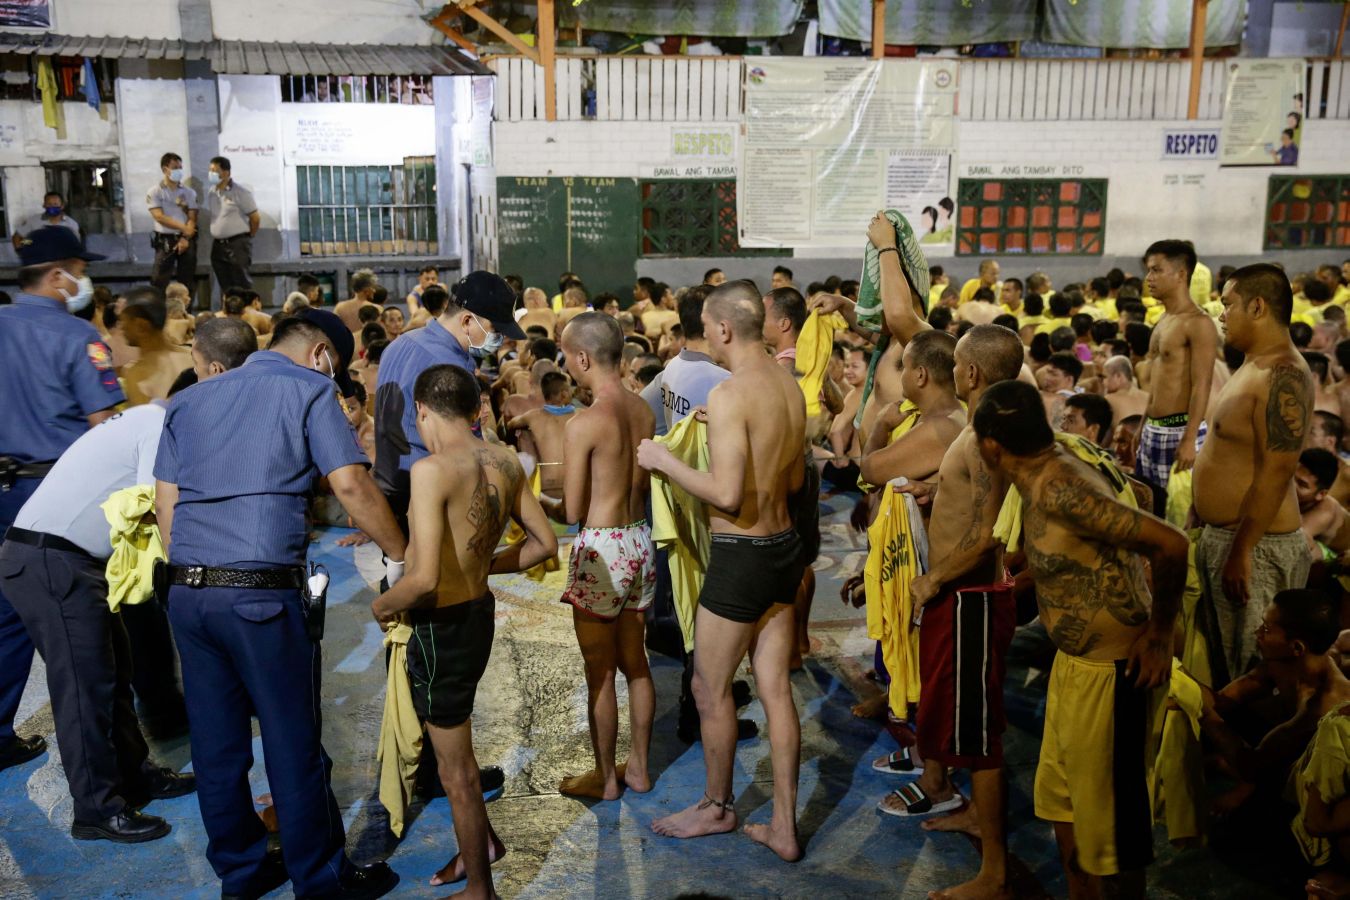 La inspección fue realizada por miembros de la oficina de Administración de Penas y Penología, el distrito de policía de Manila y la Agencia de Control de Drogas filipina, como parte de una operación para reducir el contrabando ilegal en las cárceles de todo el país.